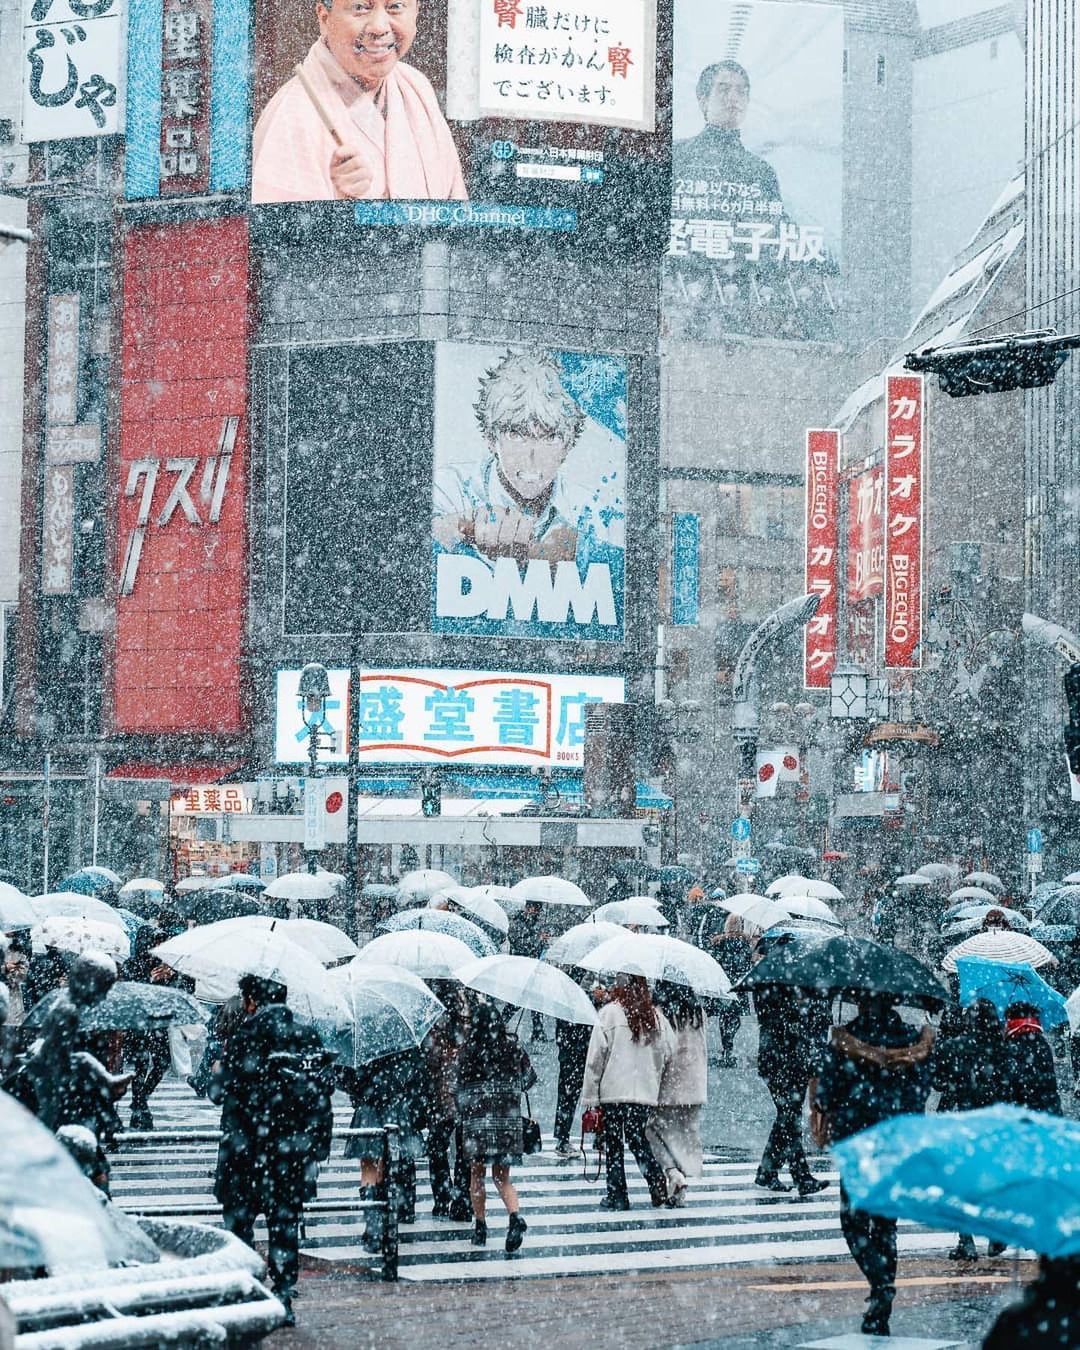 Đông ở Tokyo đem lại trải nghiệm thú vị cho mọi người khi khung cảnh xứ sở hoa anh đào được phủ một màu trắng ngần khi tuyết rơi xuống. Nếu bạn chưa từng trải nghiệm khung cảnh đông ở Tokyo, hình ảnh tuyết trắng đầy thơ mộng này sẽ khiến bạn muốn tới Tokyo ngay lập tức.